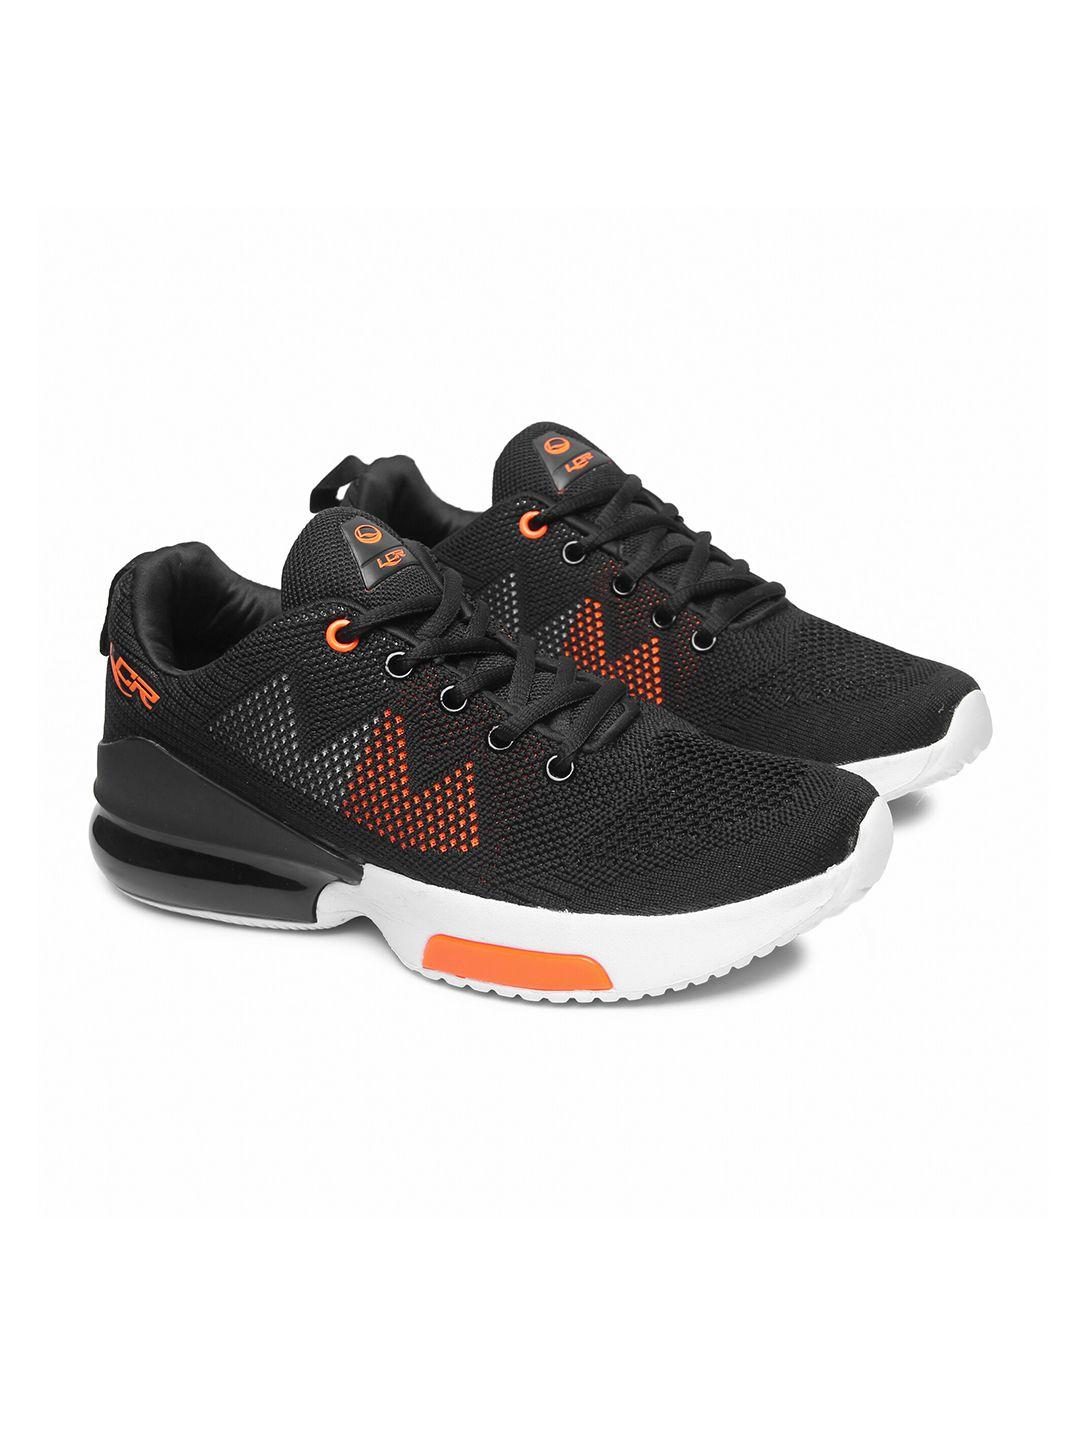 Lancer Men Black & Orange Textile Running Non-Marking Shoes